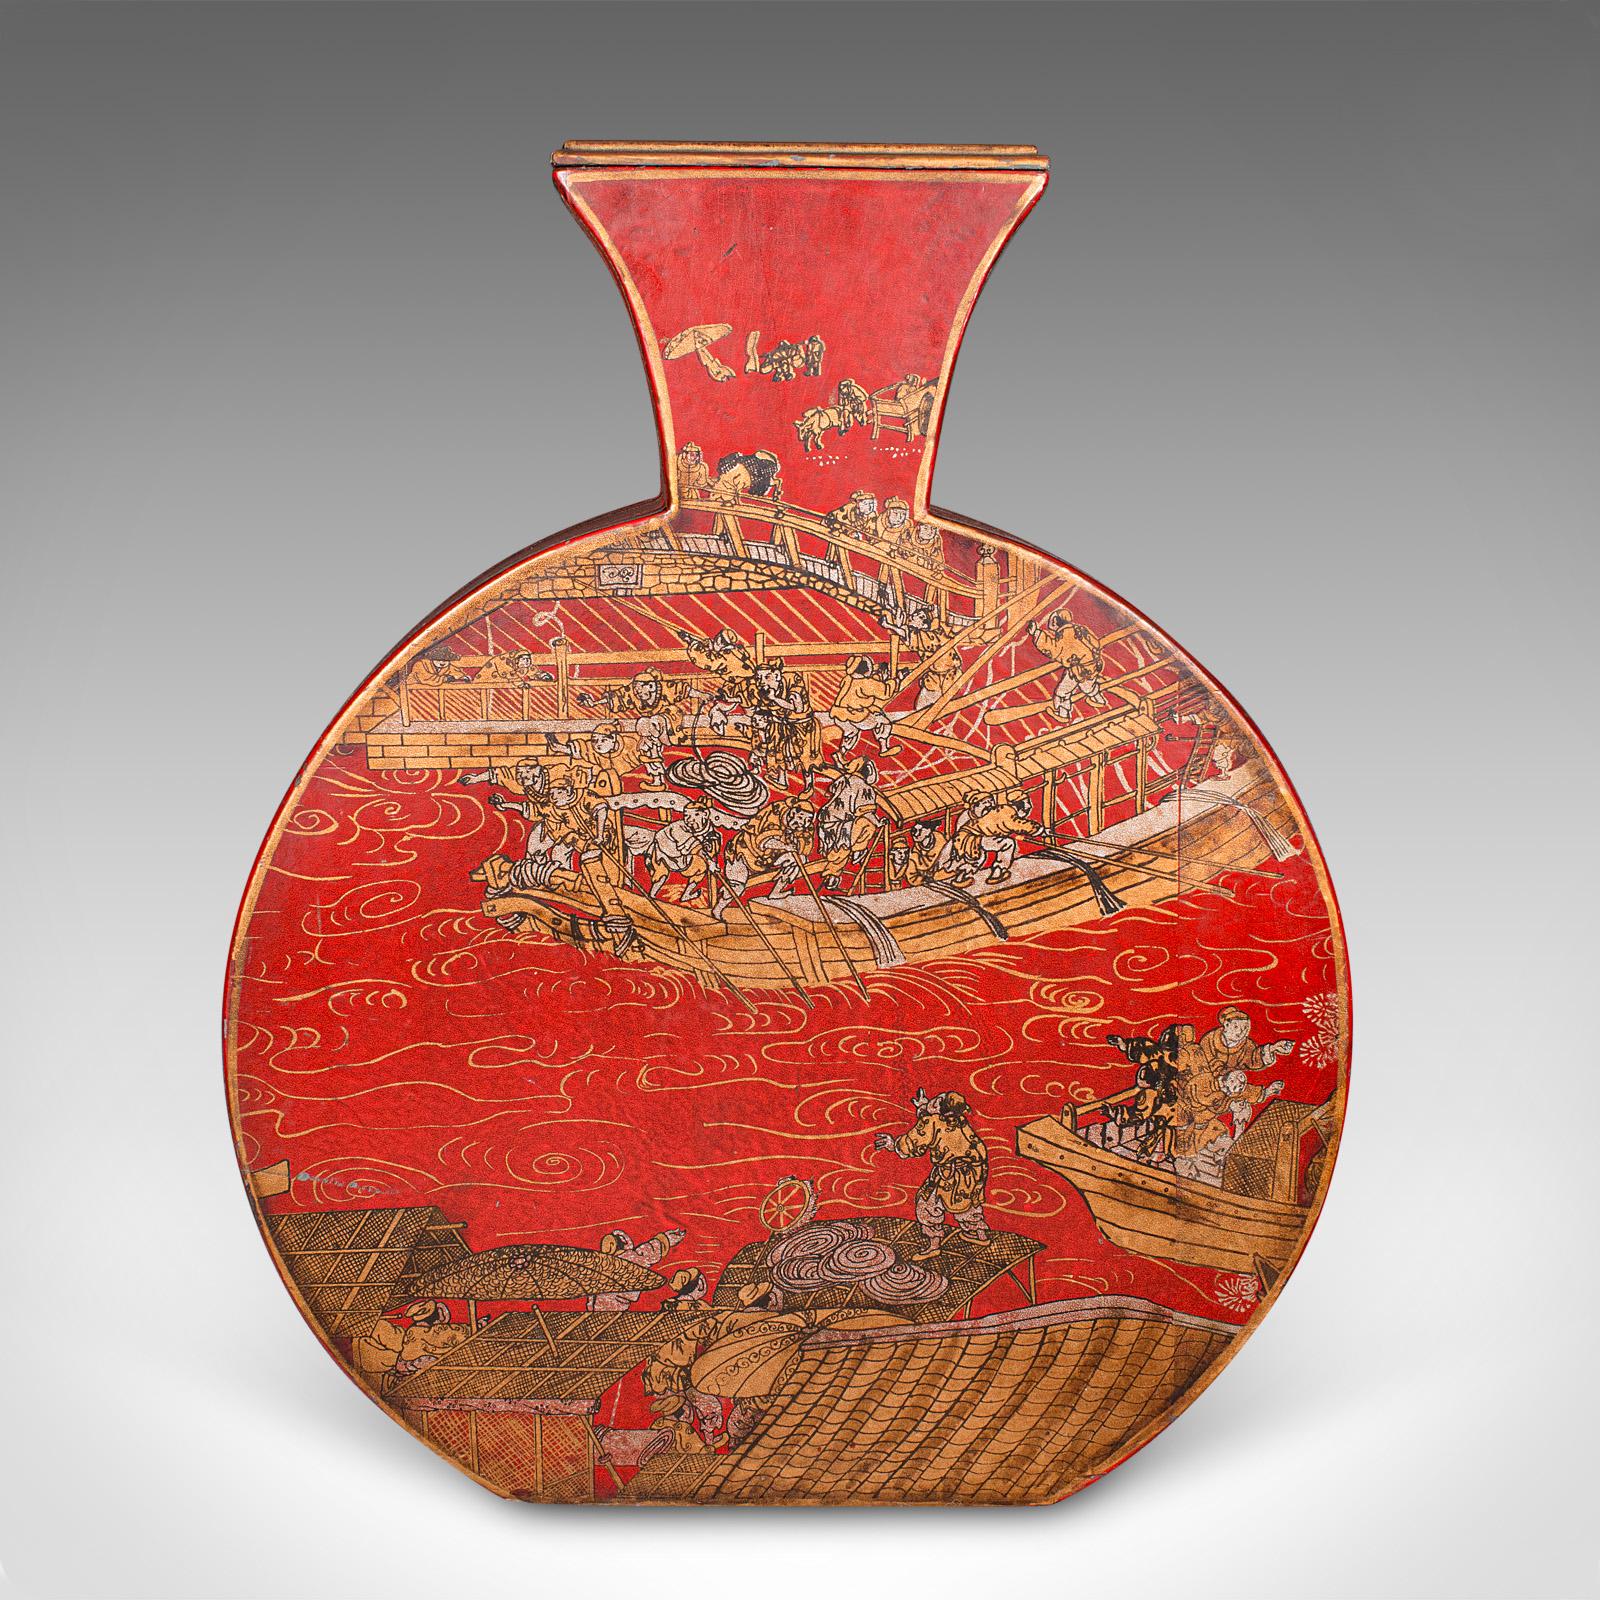 Dies ist eine große Vintage-Vase für Trockenblumen. Chinesische dekorative Trommelvase aus gewachstem Papier auf Karton, aus dem späten 20. Jahrhundert, um 1970.

Tolle Farben und ein auffälliges vergoldetes Dekor im Chinoiserie-Stil
Mit